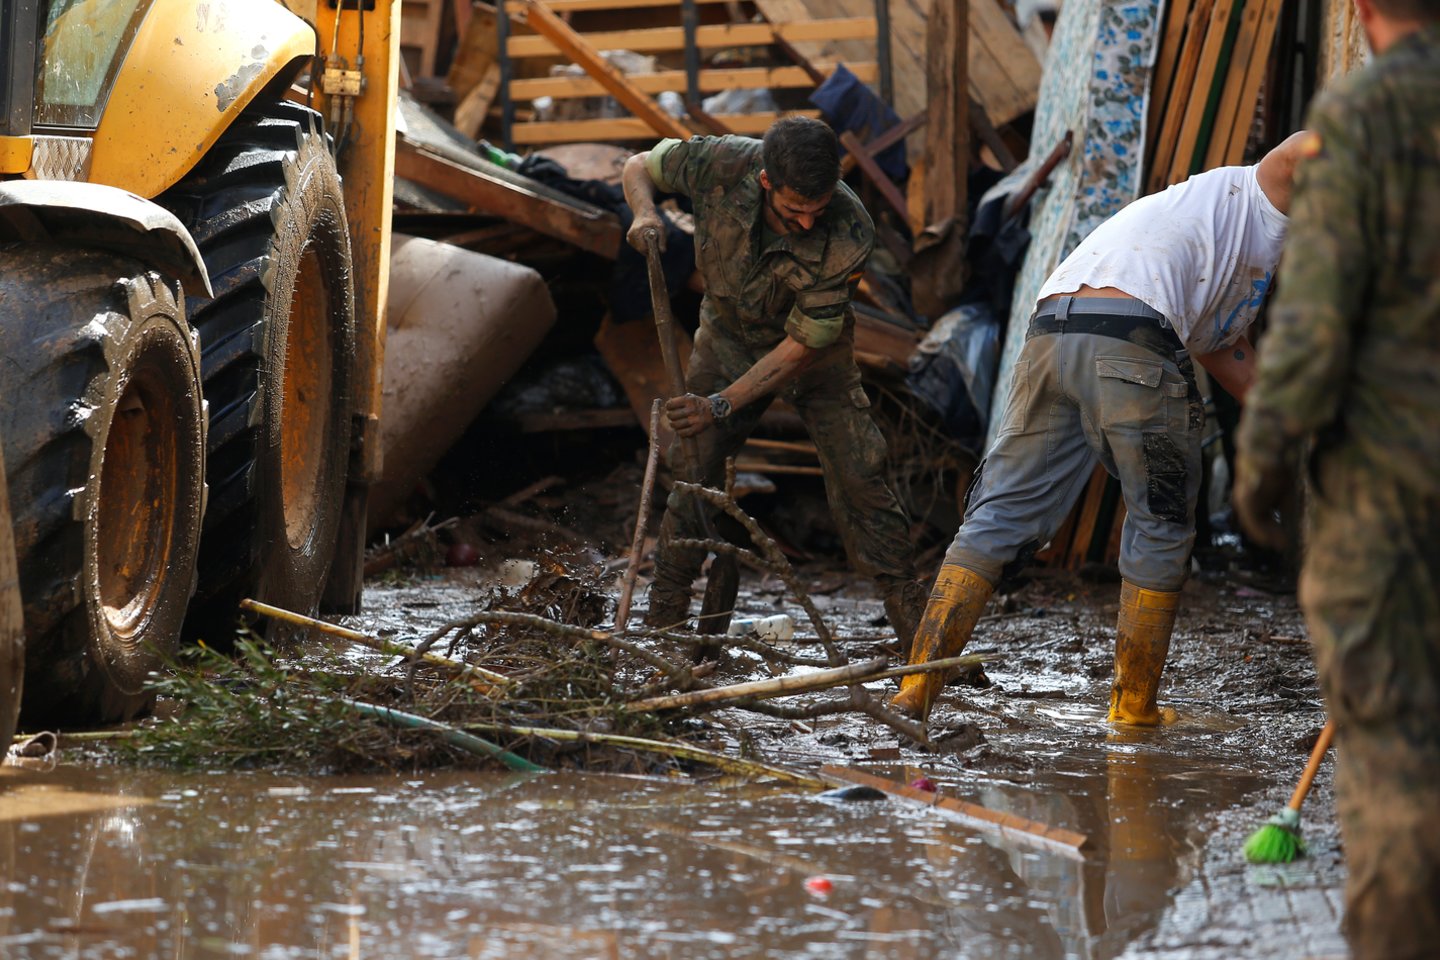  Ispanų gelbėtojams radus per potvynius Maljorkoje dingusio penkerių metų vaiko kūną, šių staigių potvynių aukų skaičius padidėjo iki 13.<br> Reuters/Scanpix nuotr. 